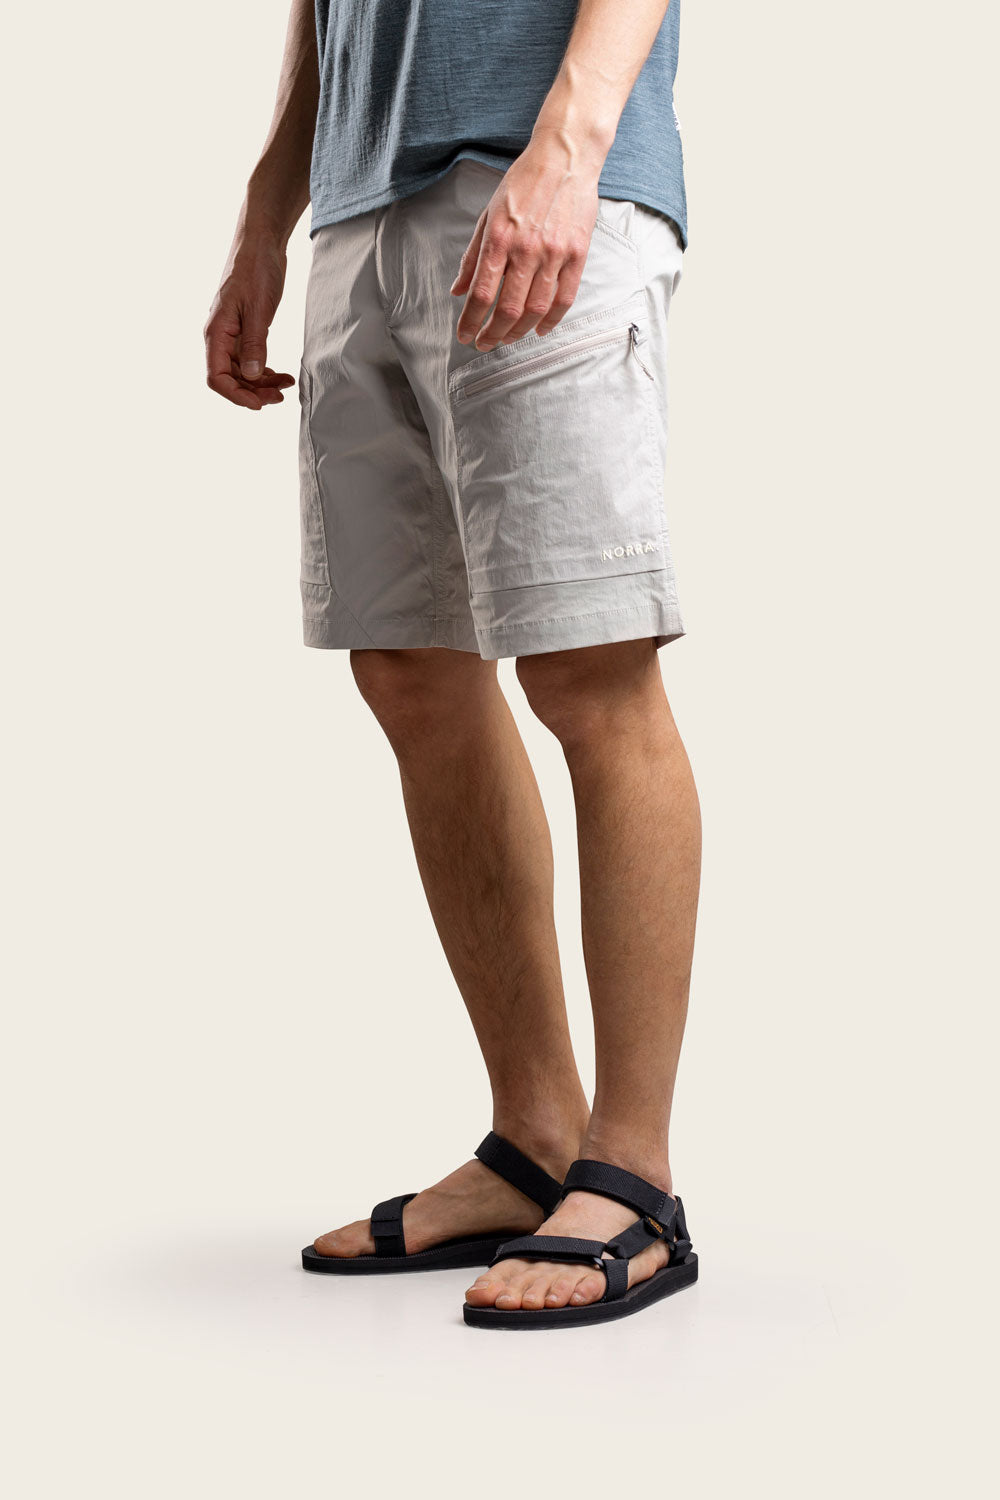 Lind Outdoor Shorts Men's